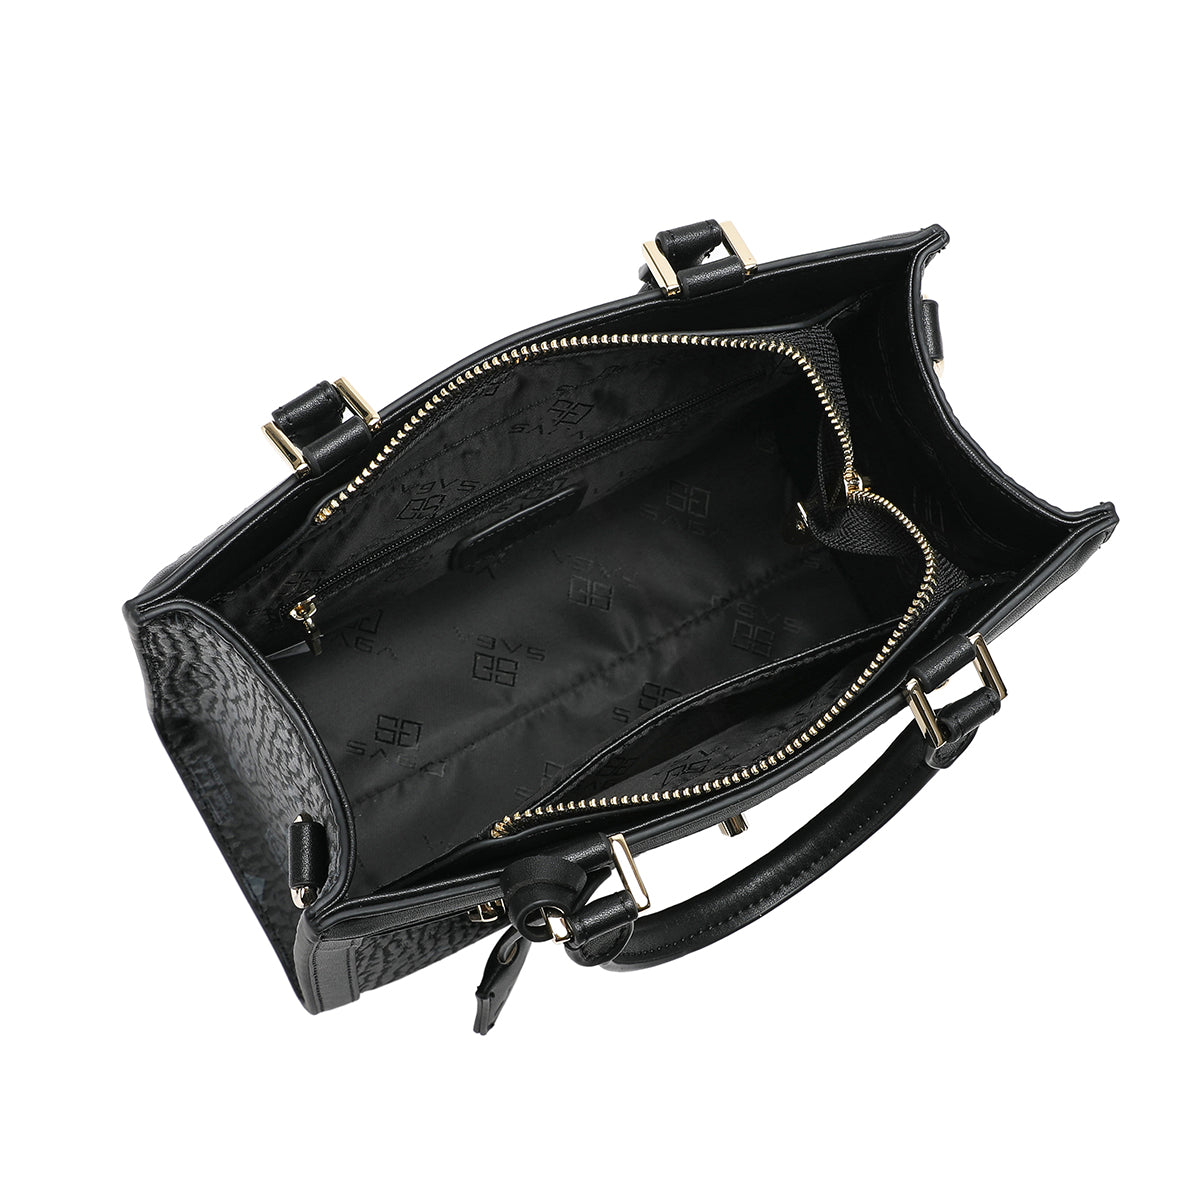 داخل حقيبة يد ماركة ساغا الأنيقة باللون الأسود، تظهر الجيوب الداخلية والتفاصيل الدقيقة